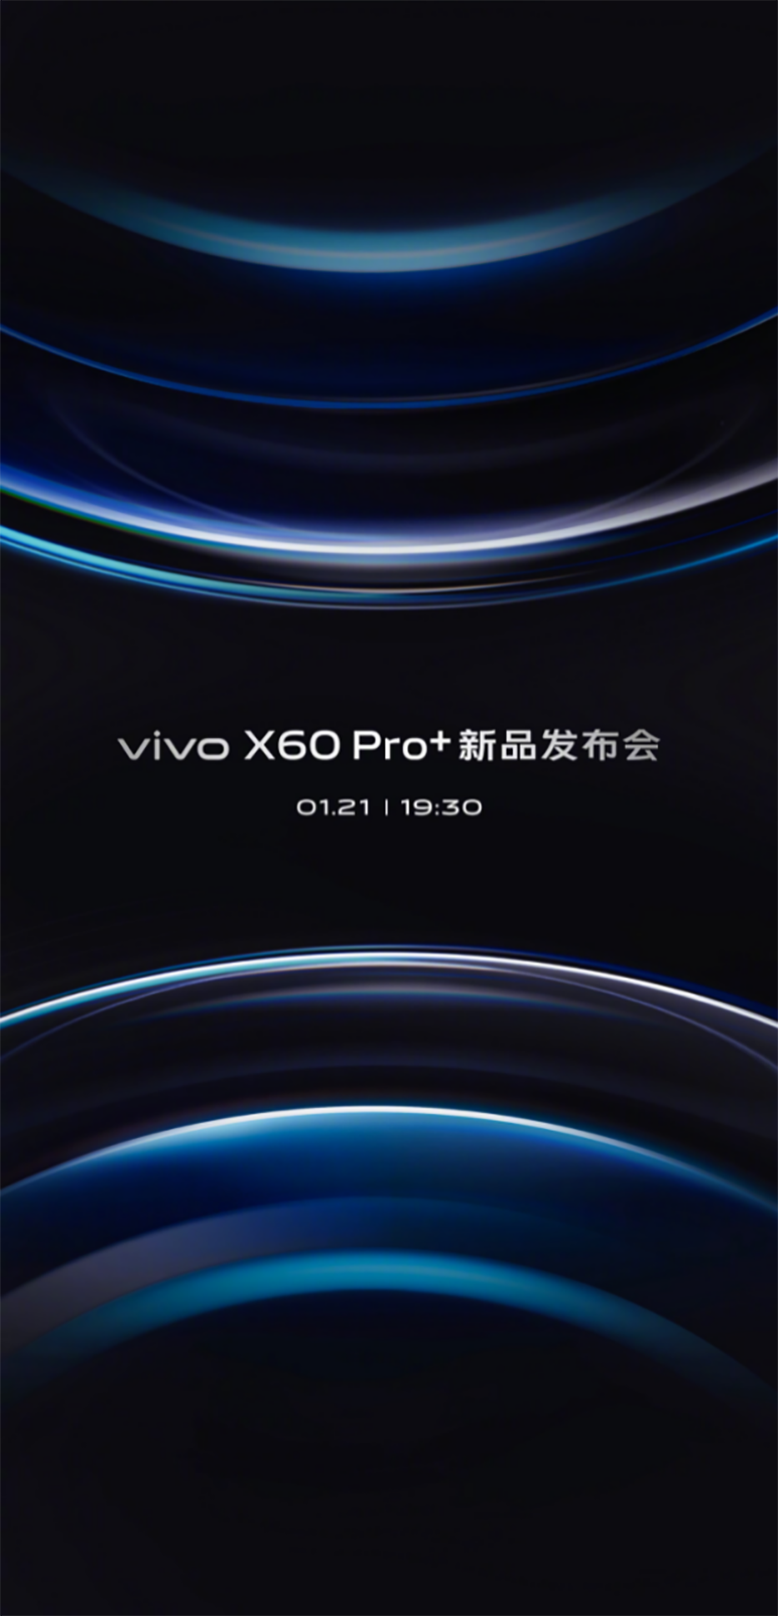 ãvivoèµè®¯ã1æ21å·è§ vivo X60 Pro+æ°ååå¸ä¼å³å°å¬å¼342.png